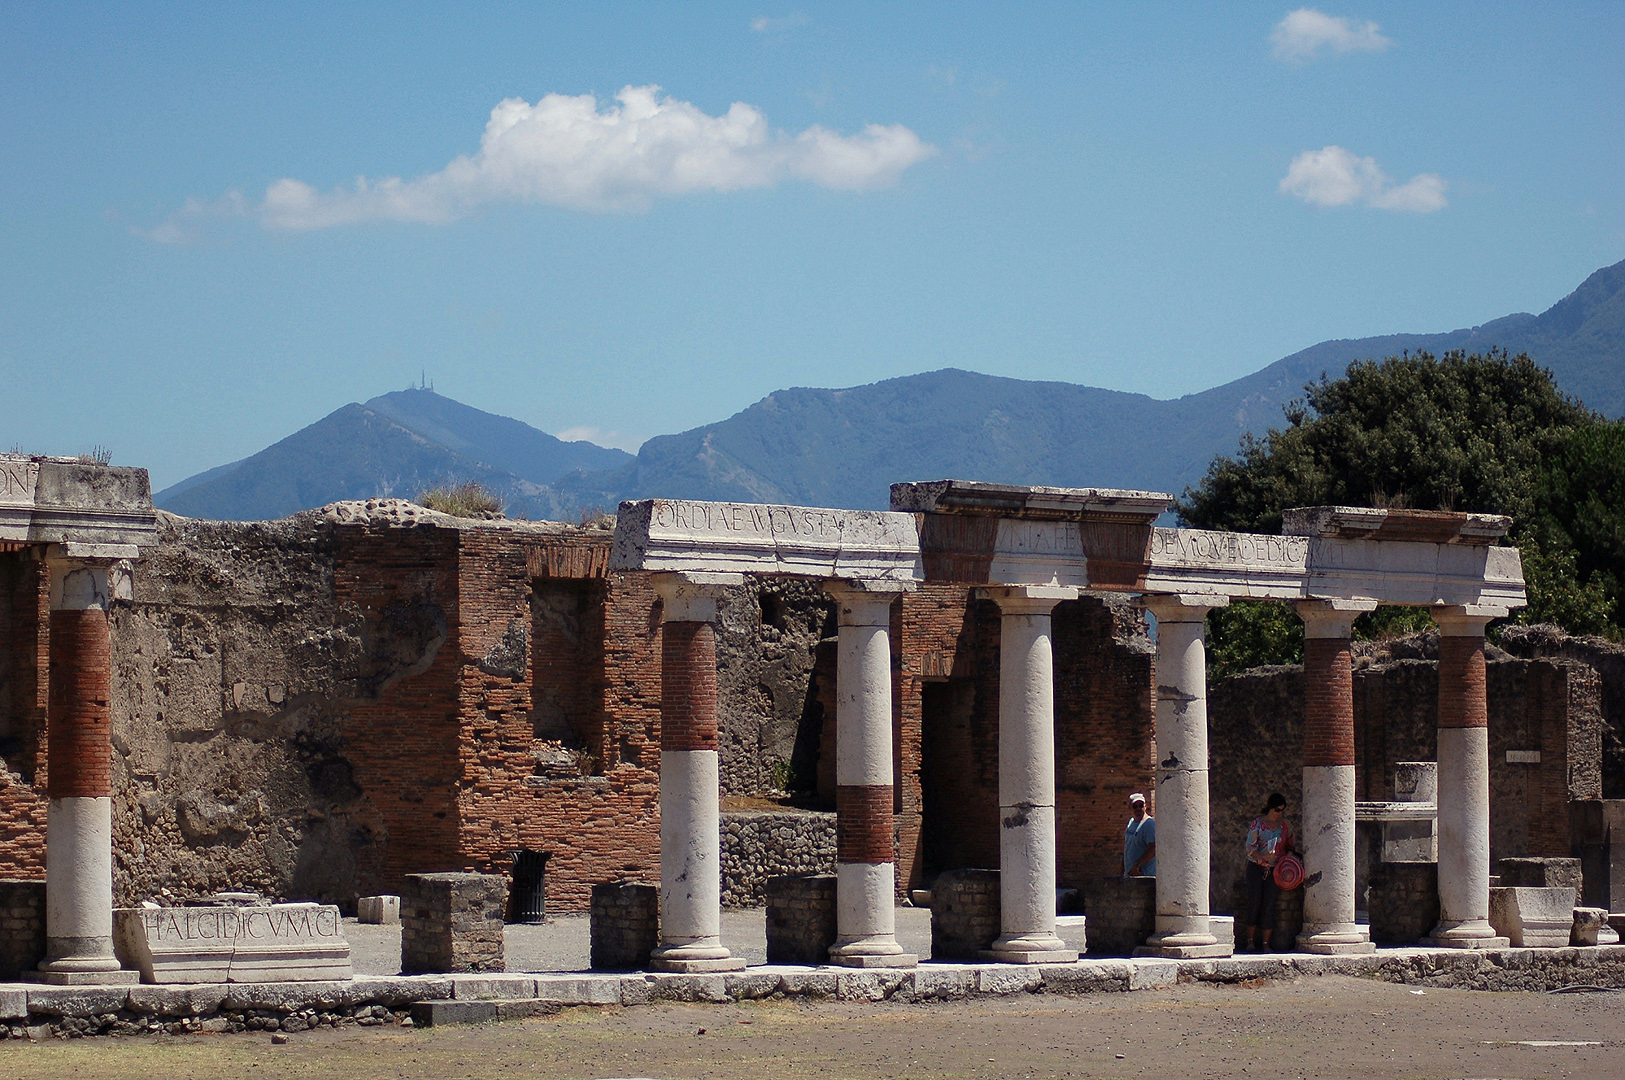 Forum, Pompeii, Campanië, Italië, Forum, Pompeii, Campania, Italy